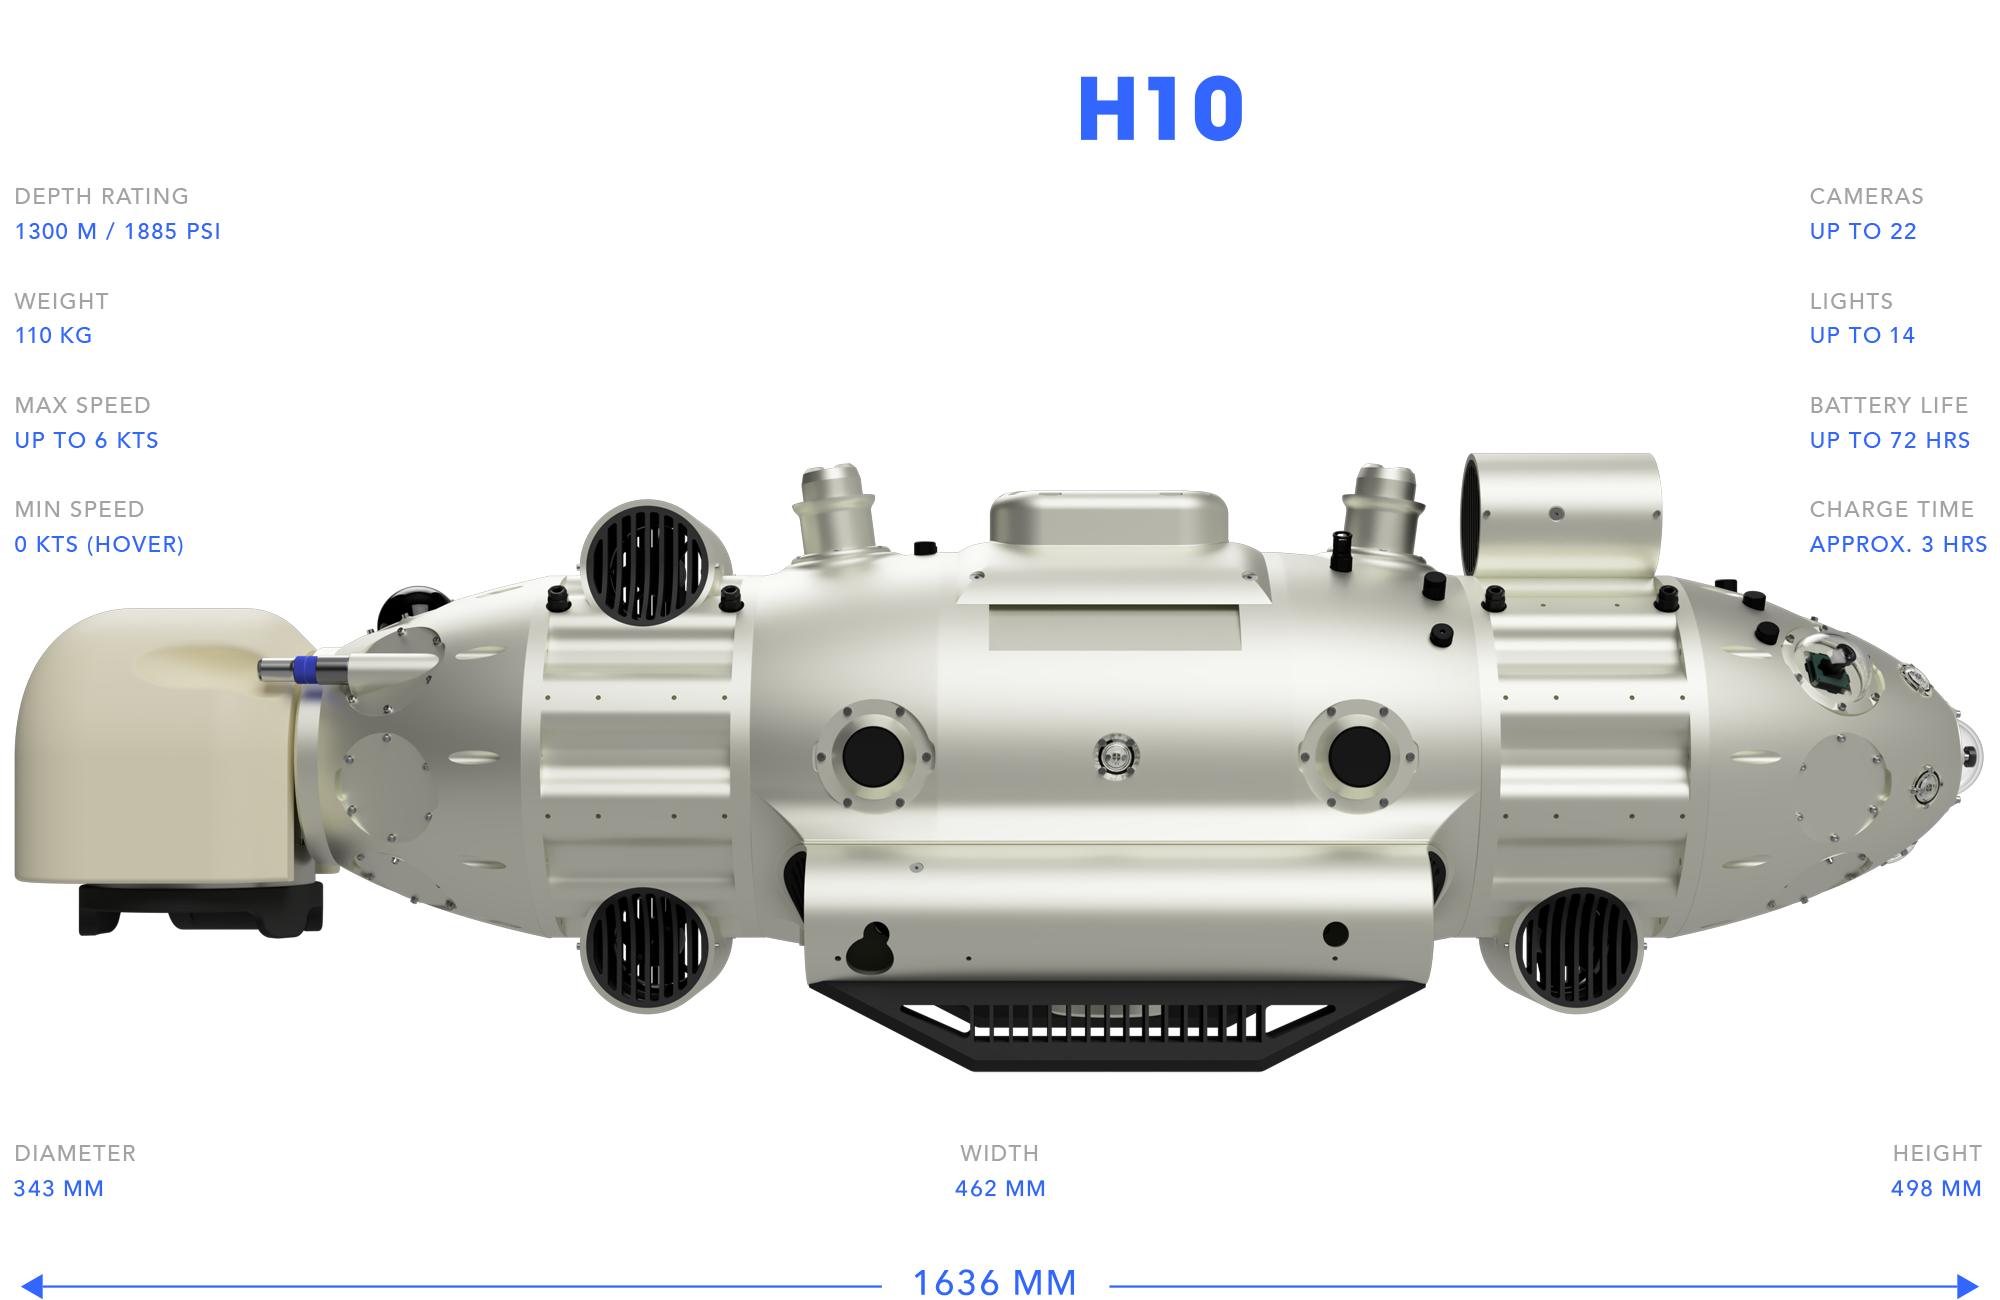 Model H10